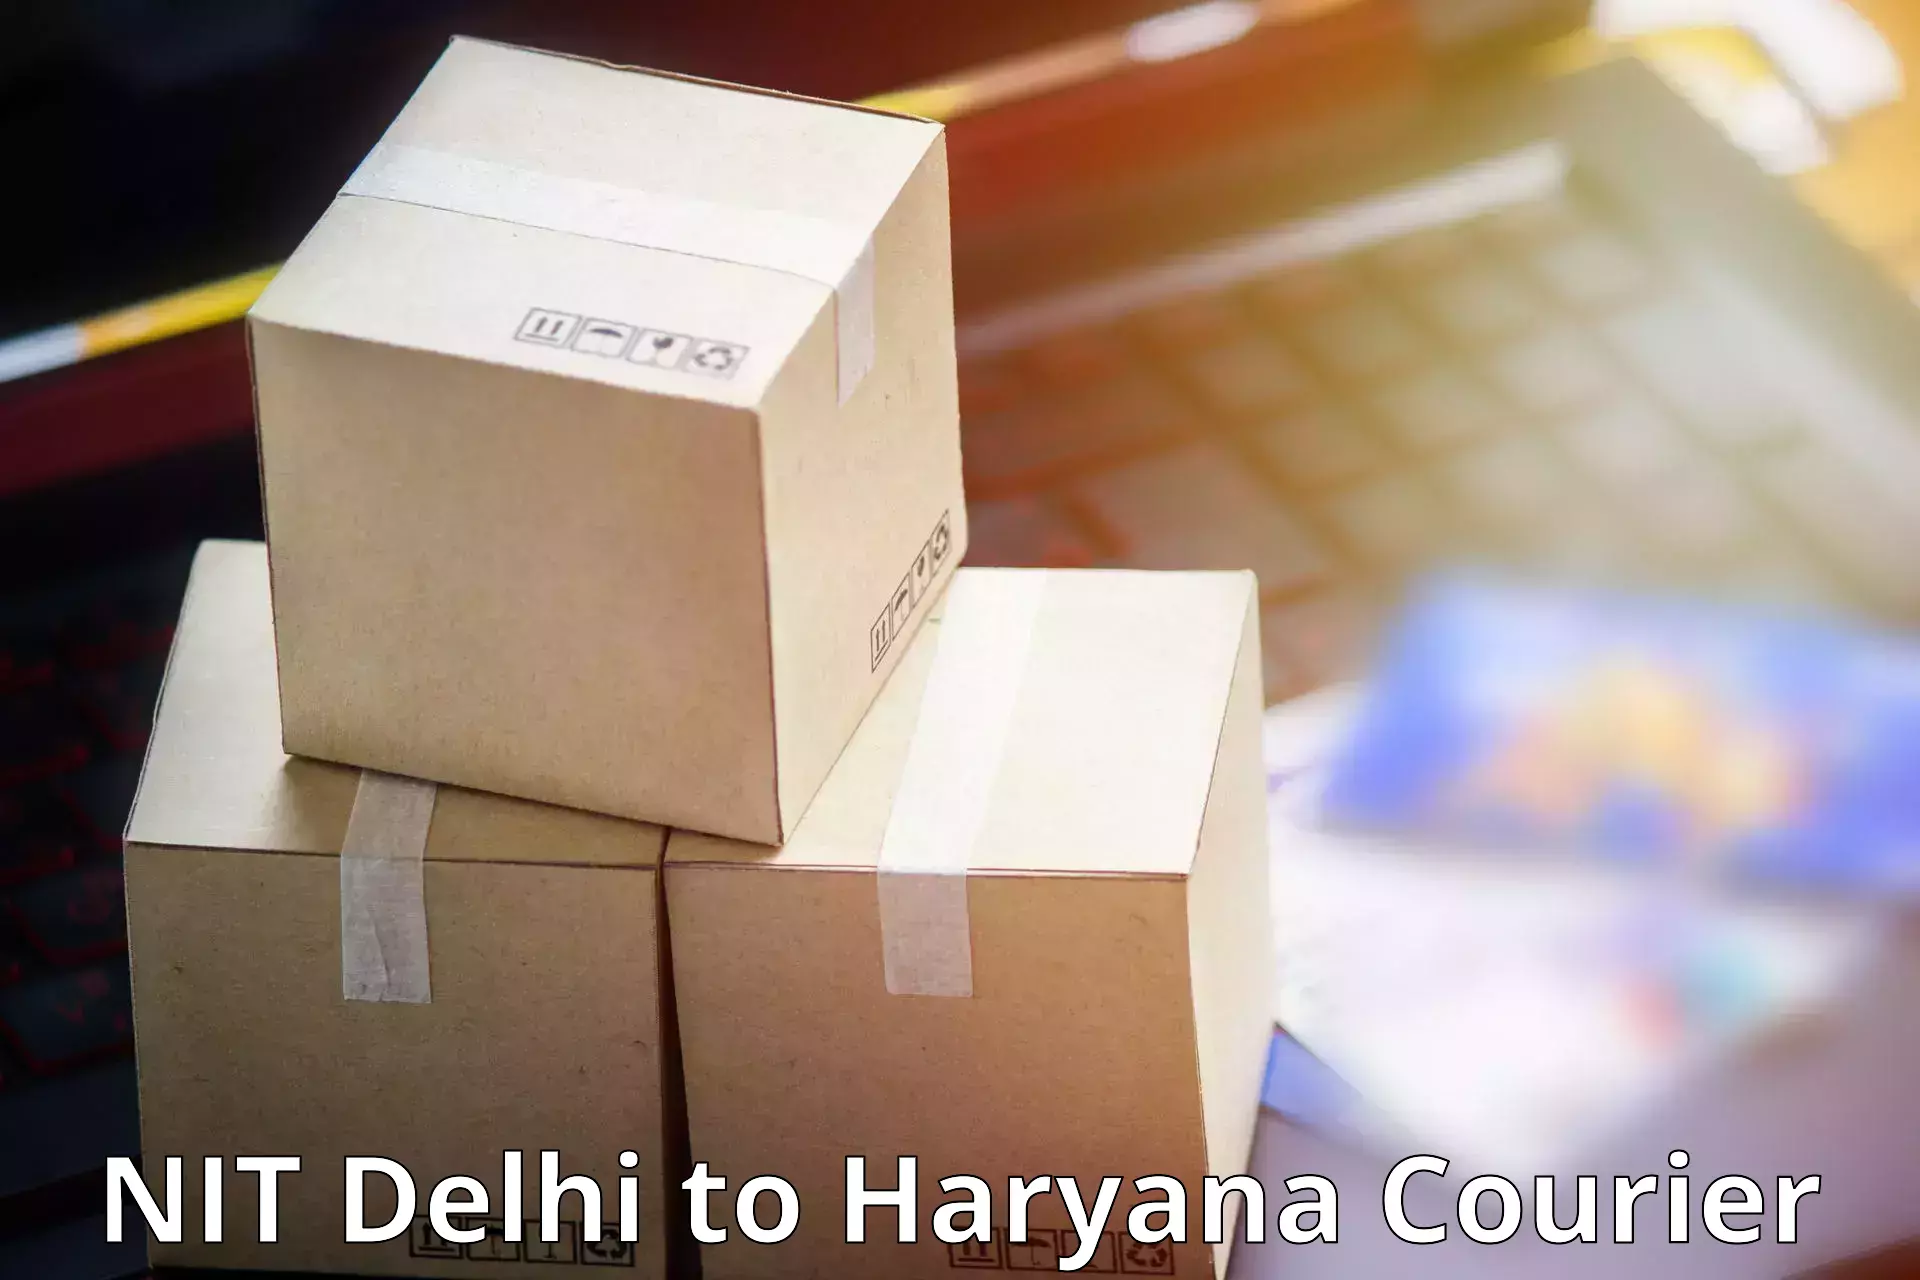 User-friendly delivery service NIT Delhi to Rewari